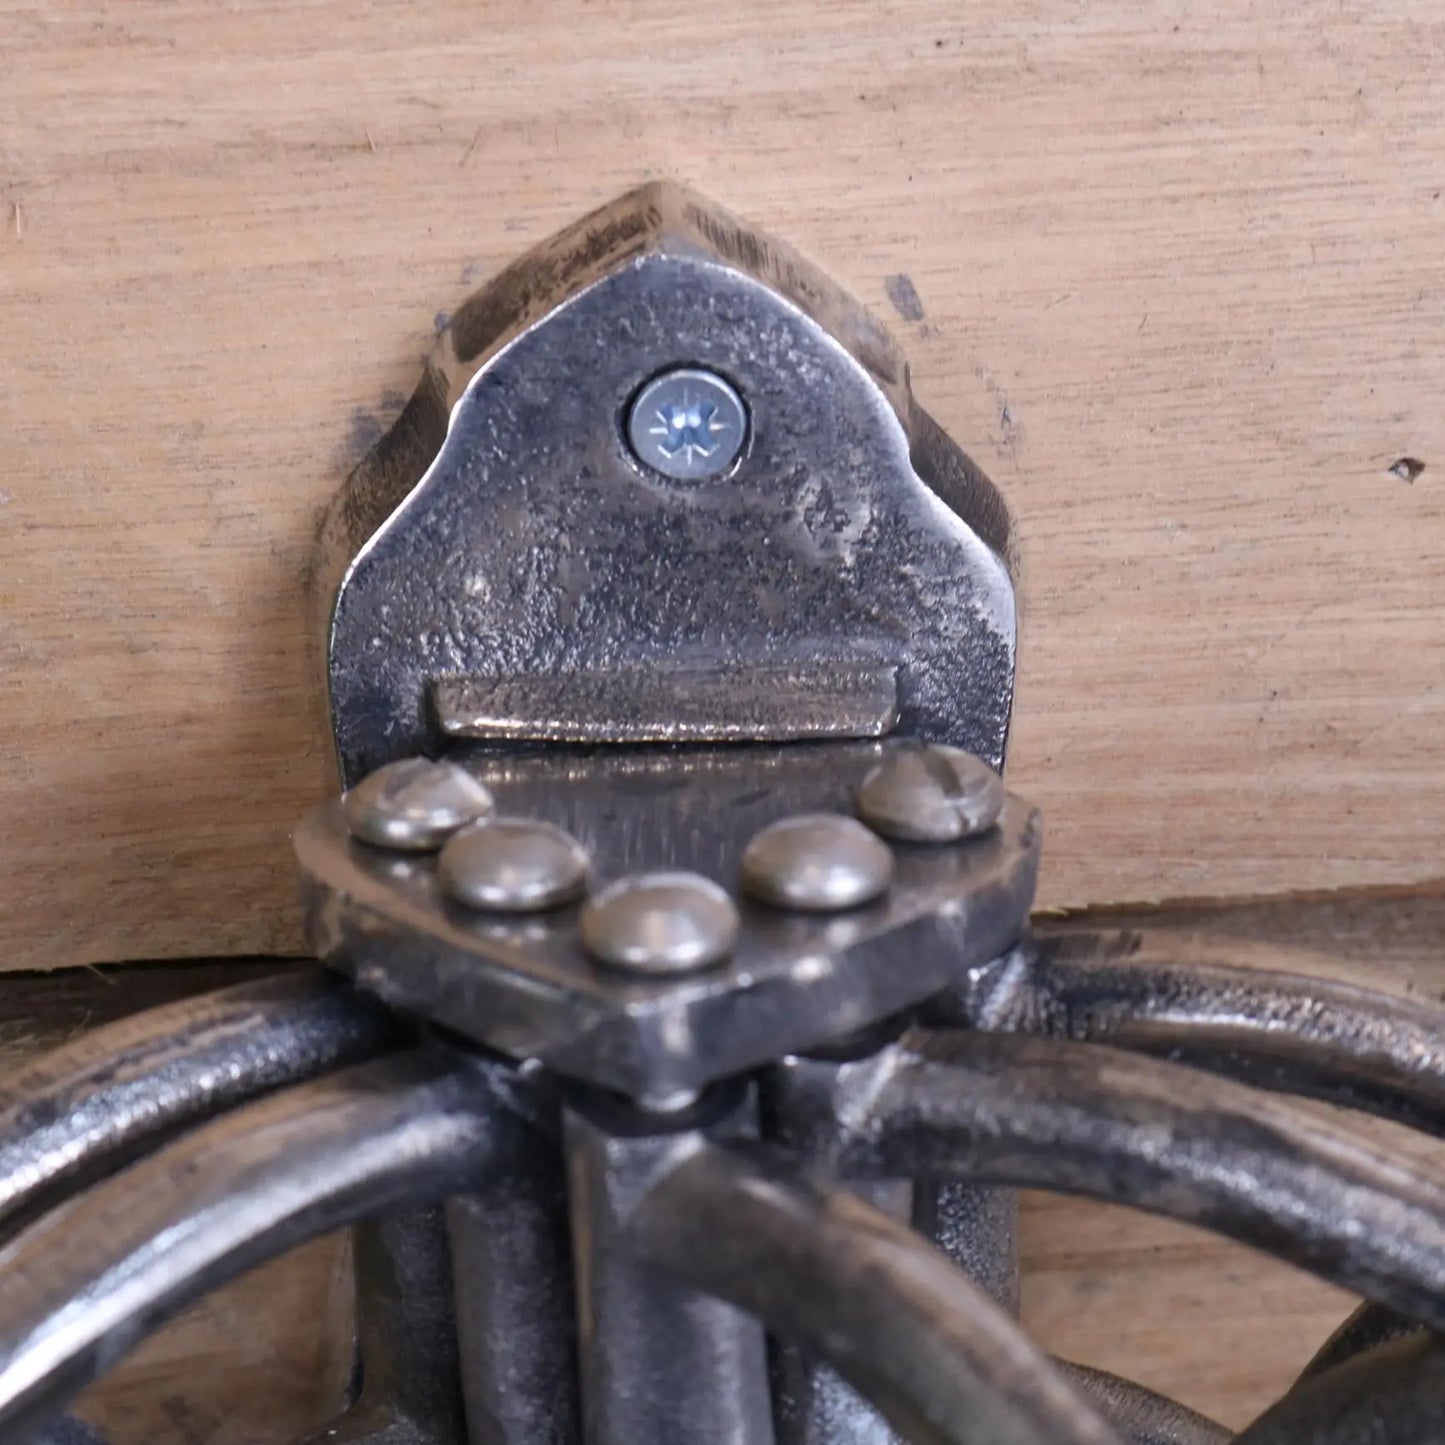 Kesda 5 Way Swivel Coat Hooks Vintage Finish - Closeup of Mounting